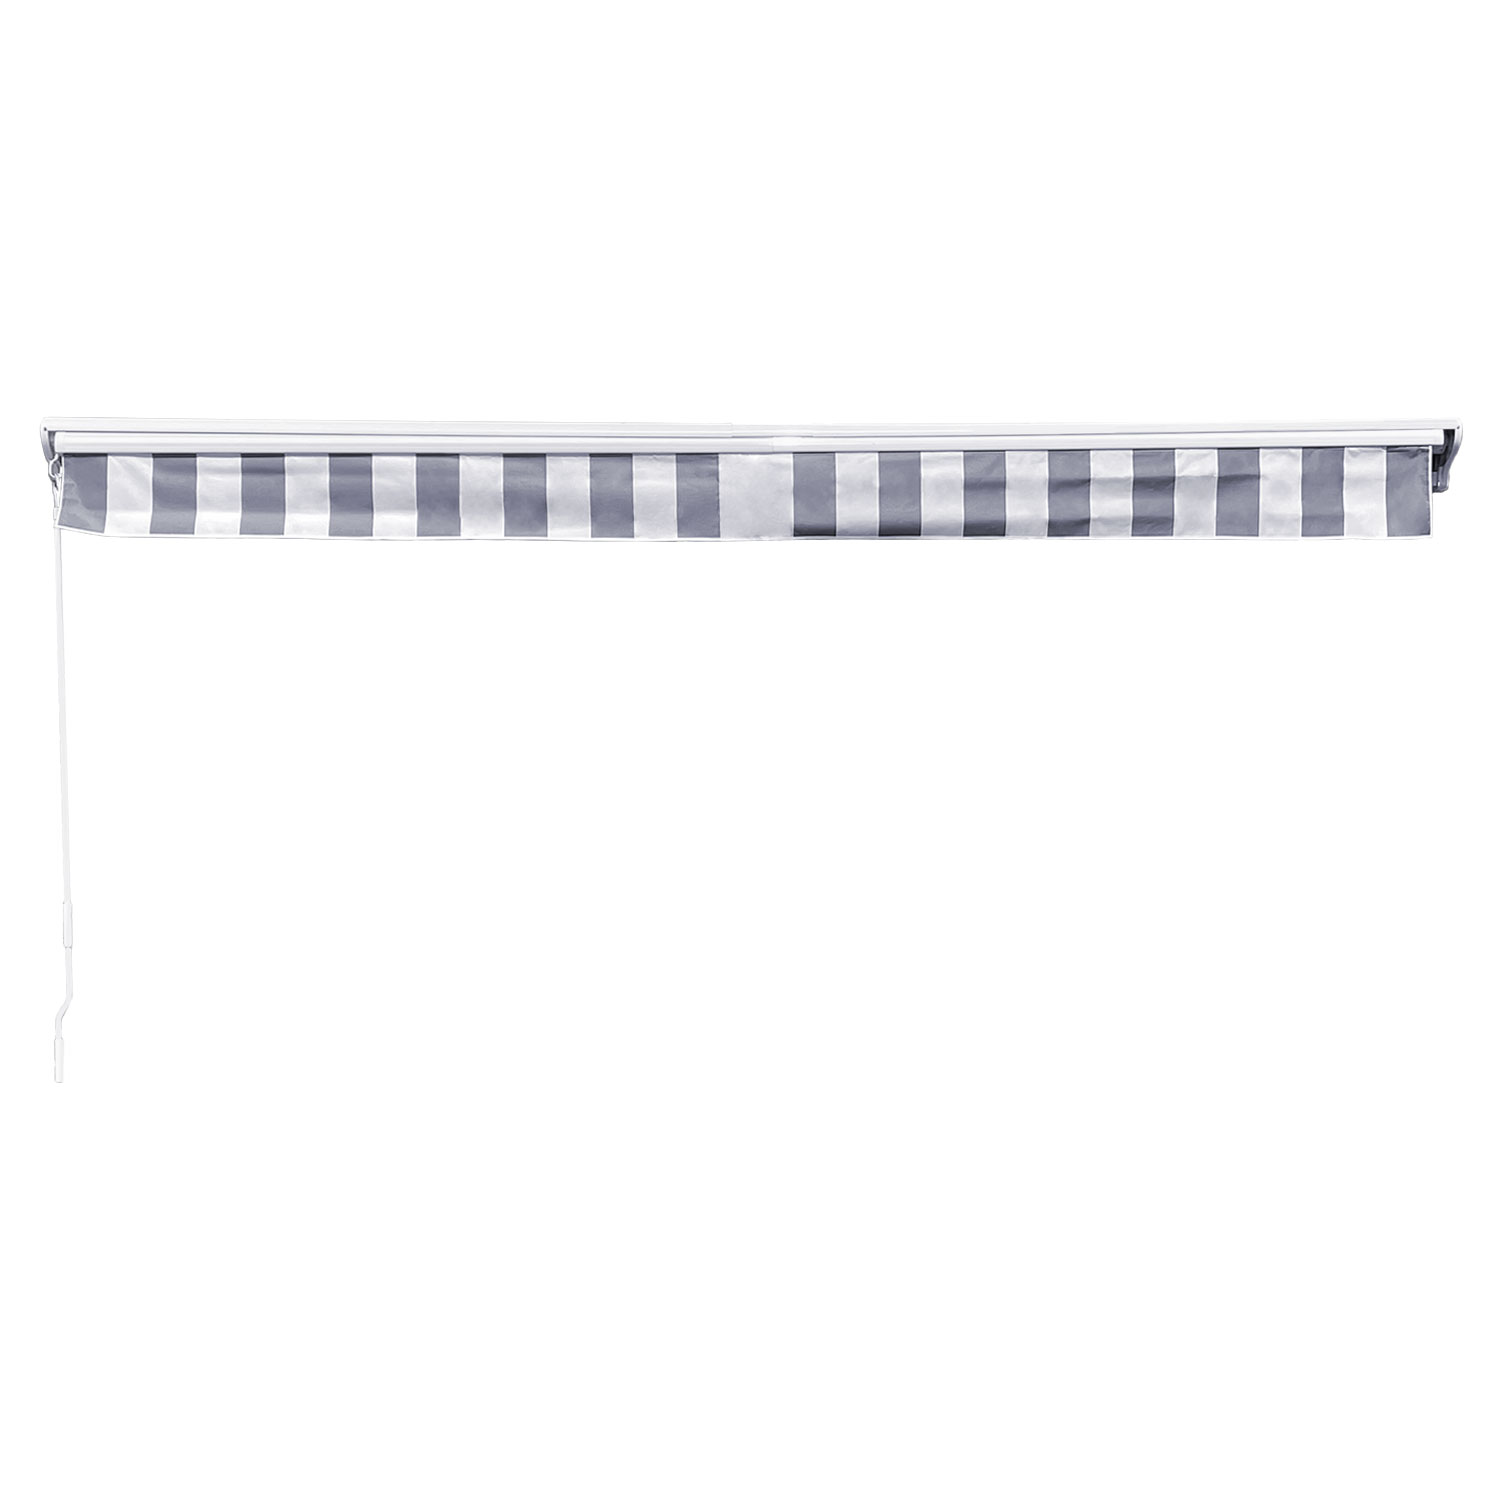 SAULE luifel 3.95 × 3m met half luifel - Wit/grijs gestreept doek en witte structuur